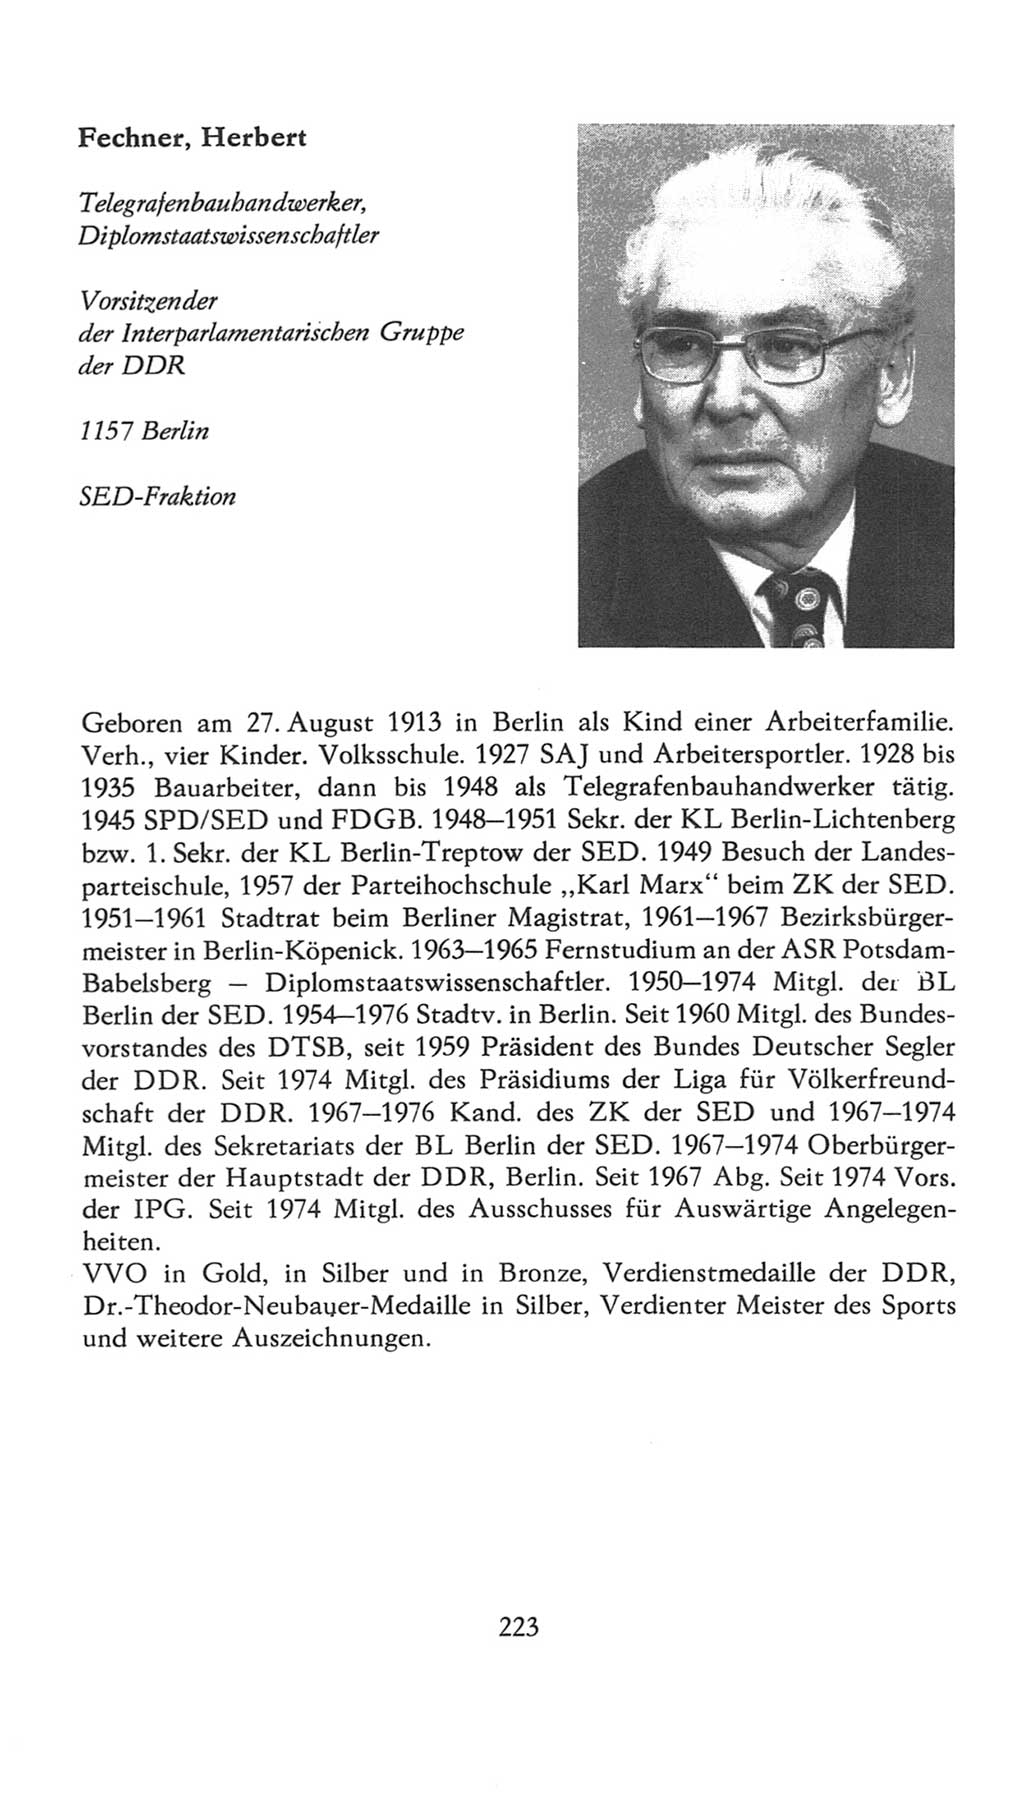 Volkskammer (VK) der Deutschen Demokratischen Republik (DDR), 7. Wahlperiode 1976-1981, Seite 223 (VK. DDR 7. WP. 1976-1981, S. 223)